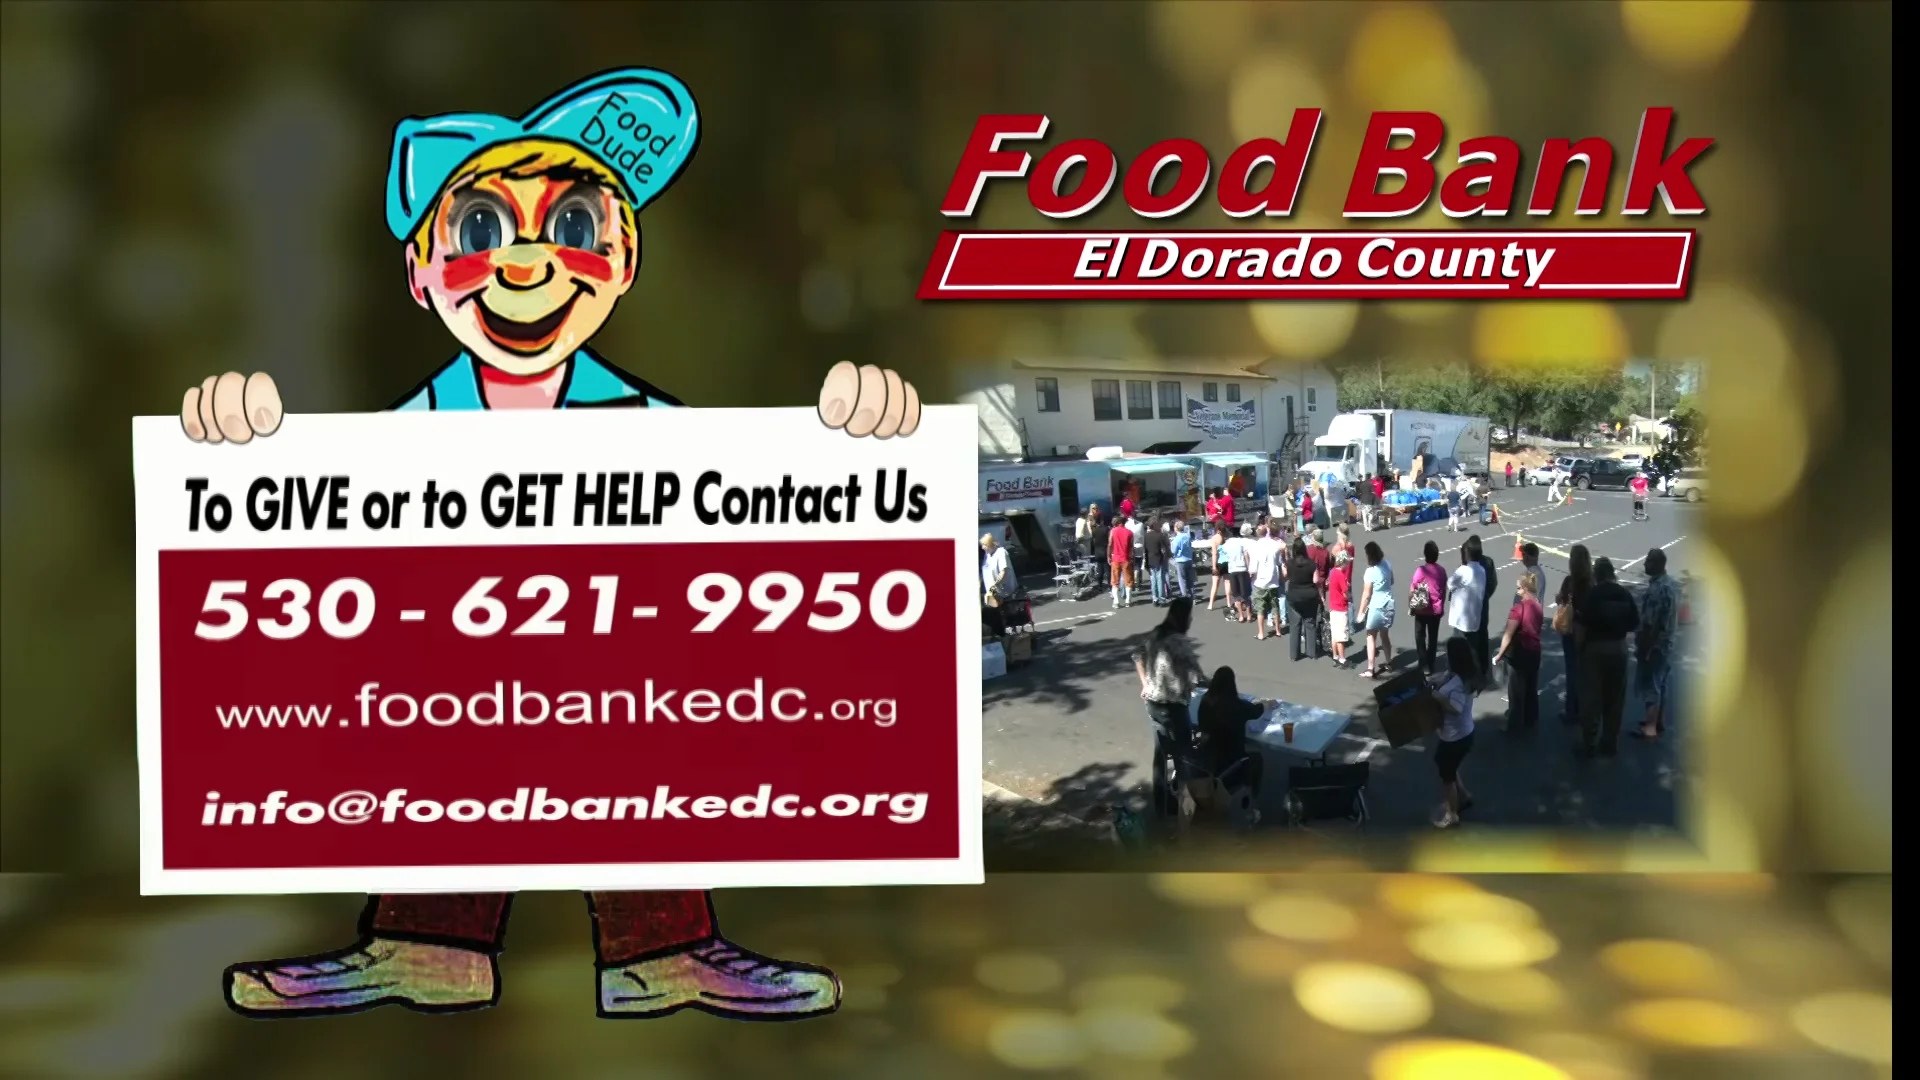 Food Bank of El Dorado County Holiday Spot 01 on Vimeo